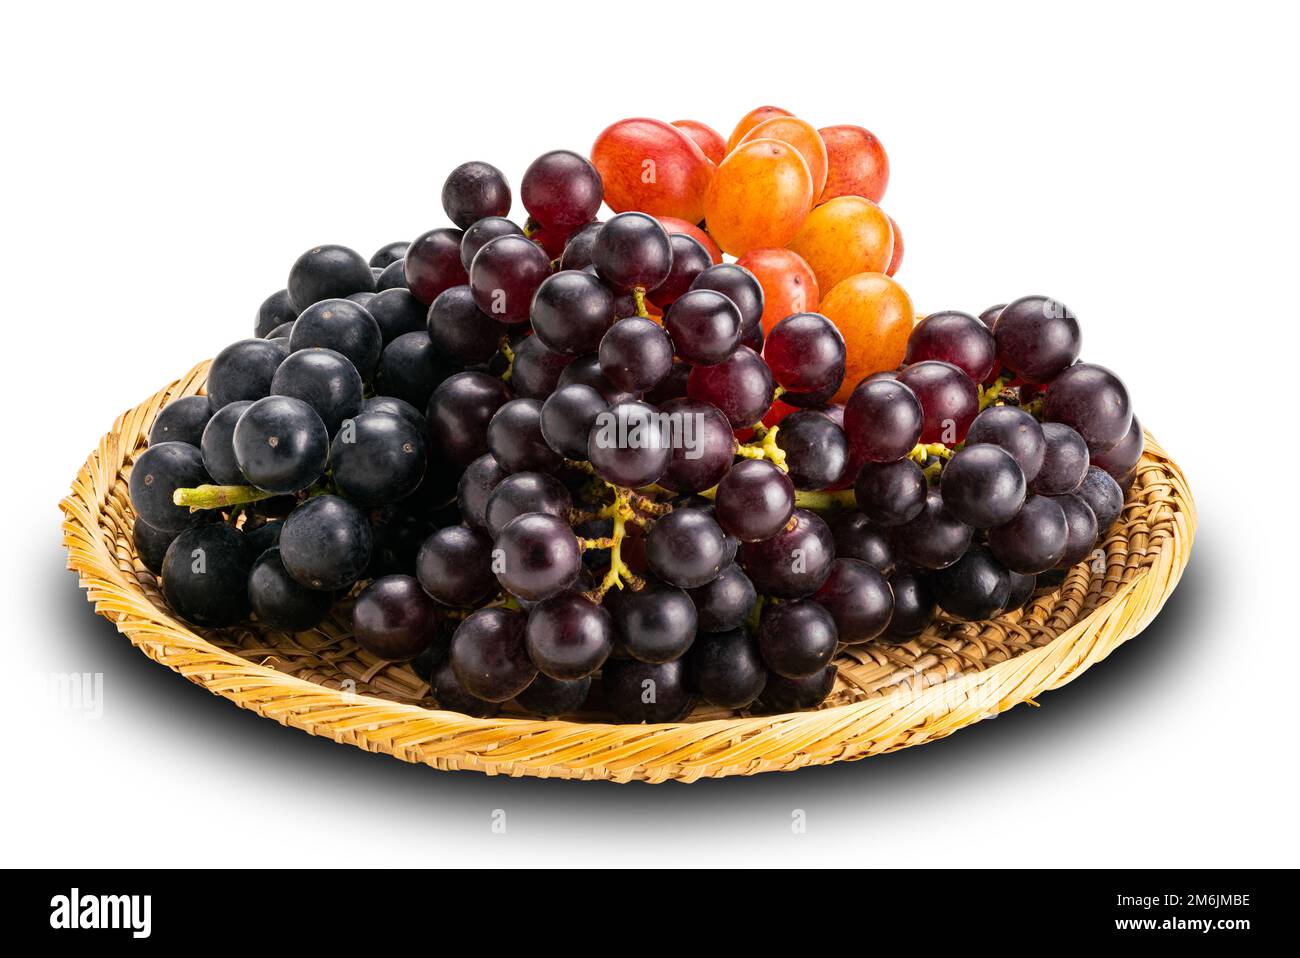 Grappes de raisins rouges mûrs, raisins noirs et raisins violets en plaque de bambou. Banque D'Images